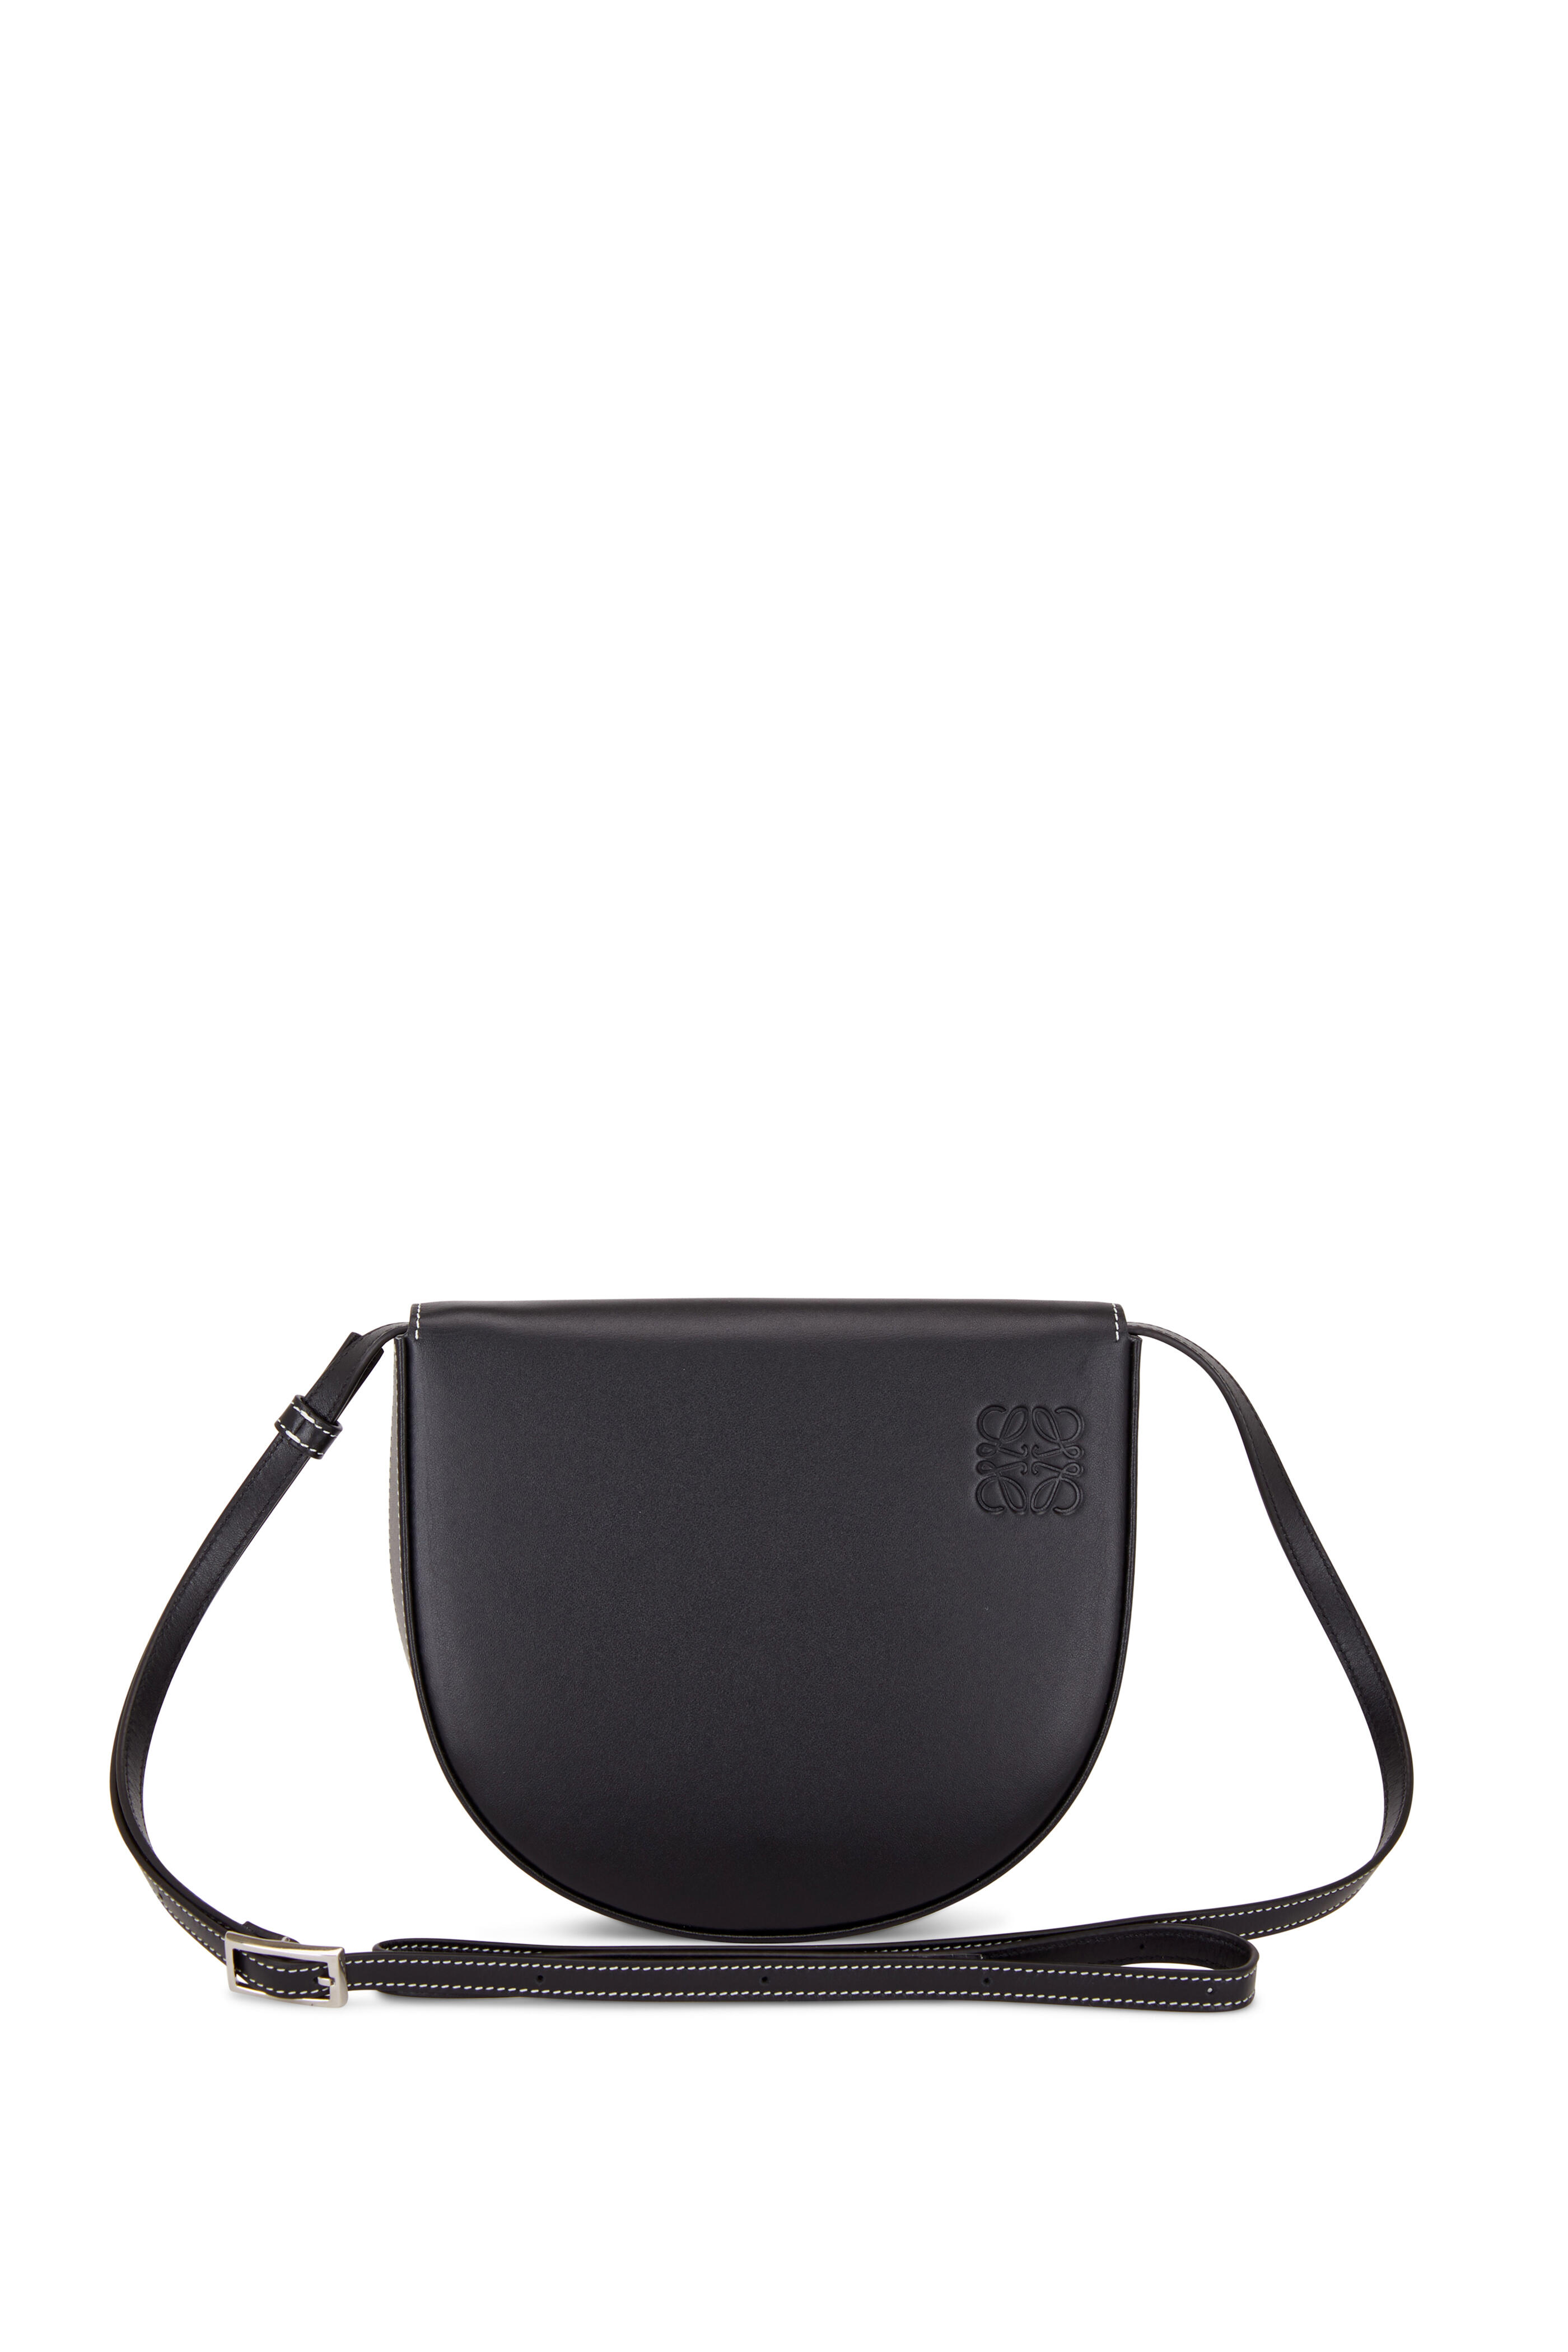 Loewe Black Leather Heel Mini Bag